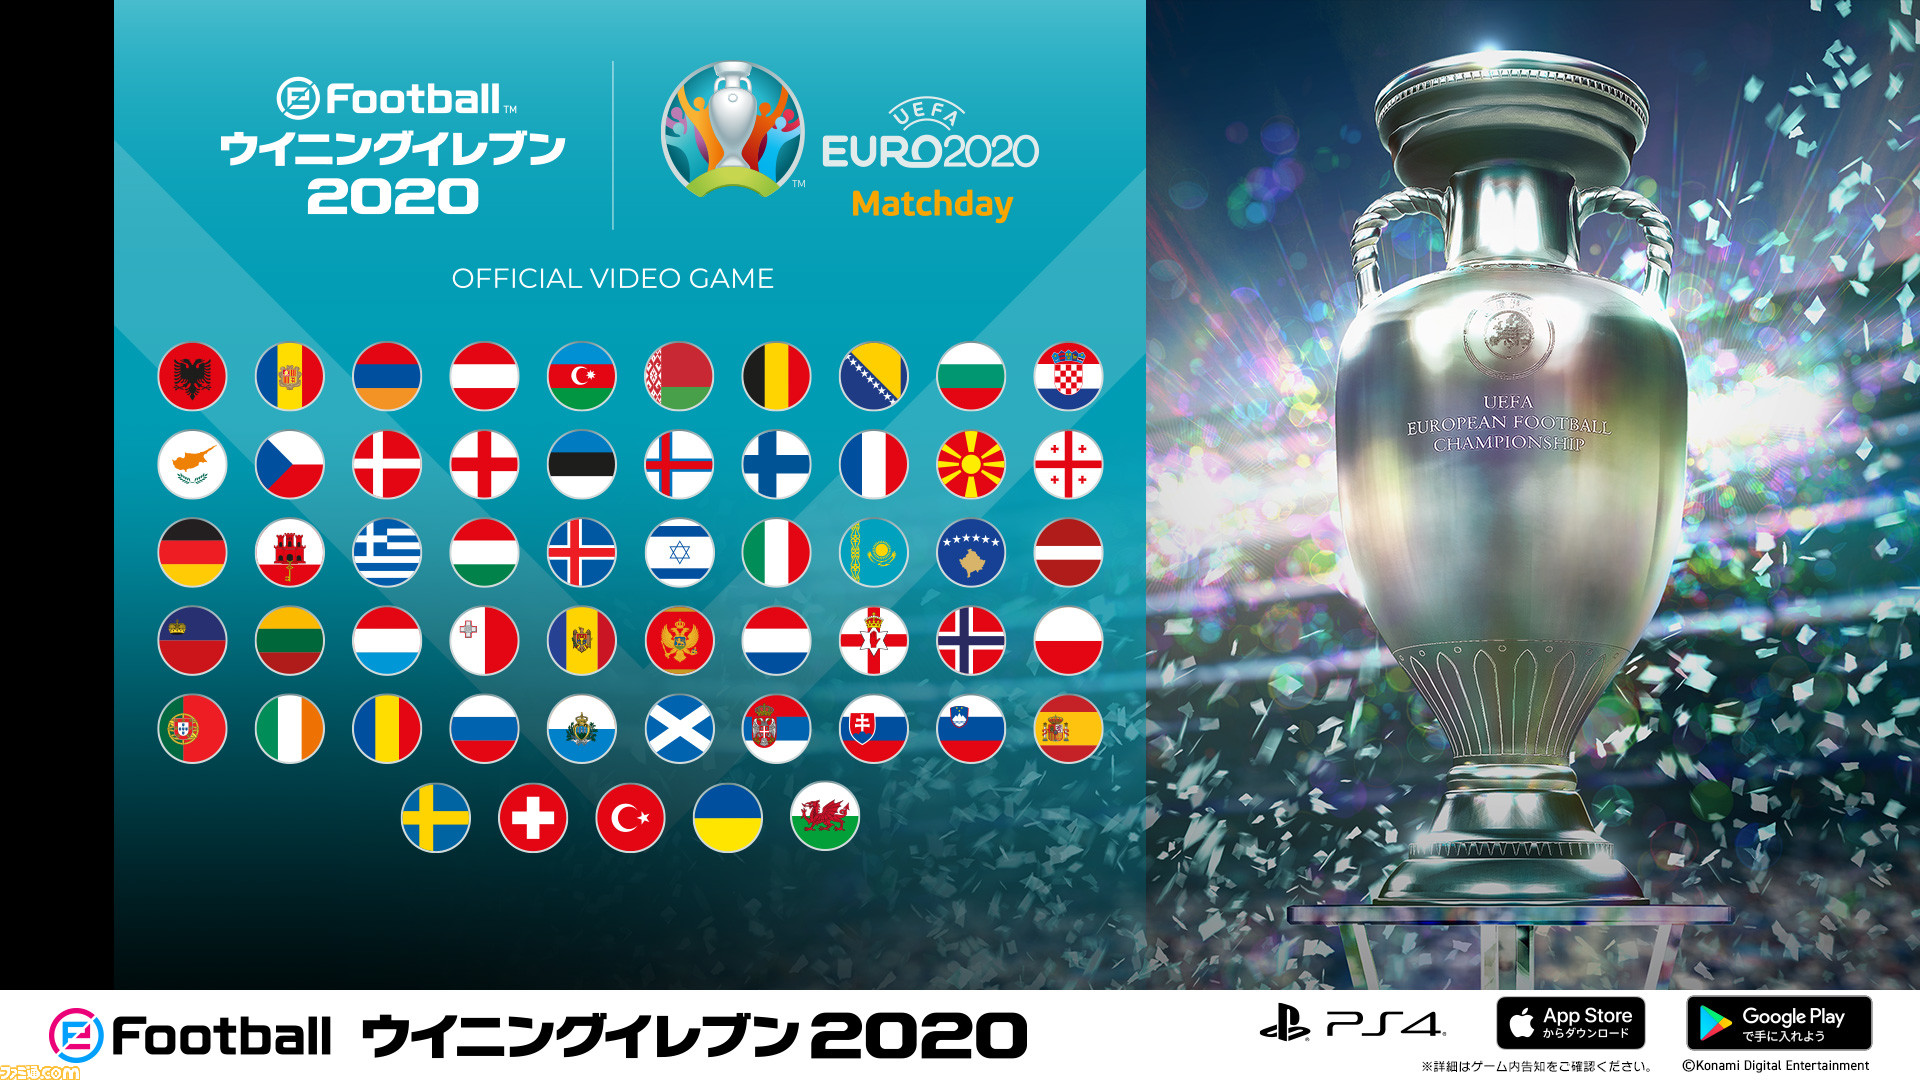 ウイイレ 2020』でオンラインイベント“UEFA EURO 2020 Matchday”が開催 ...